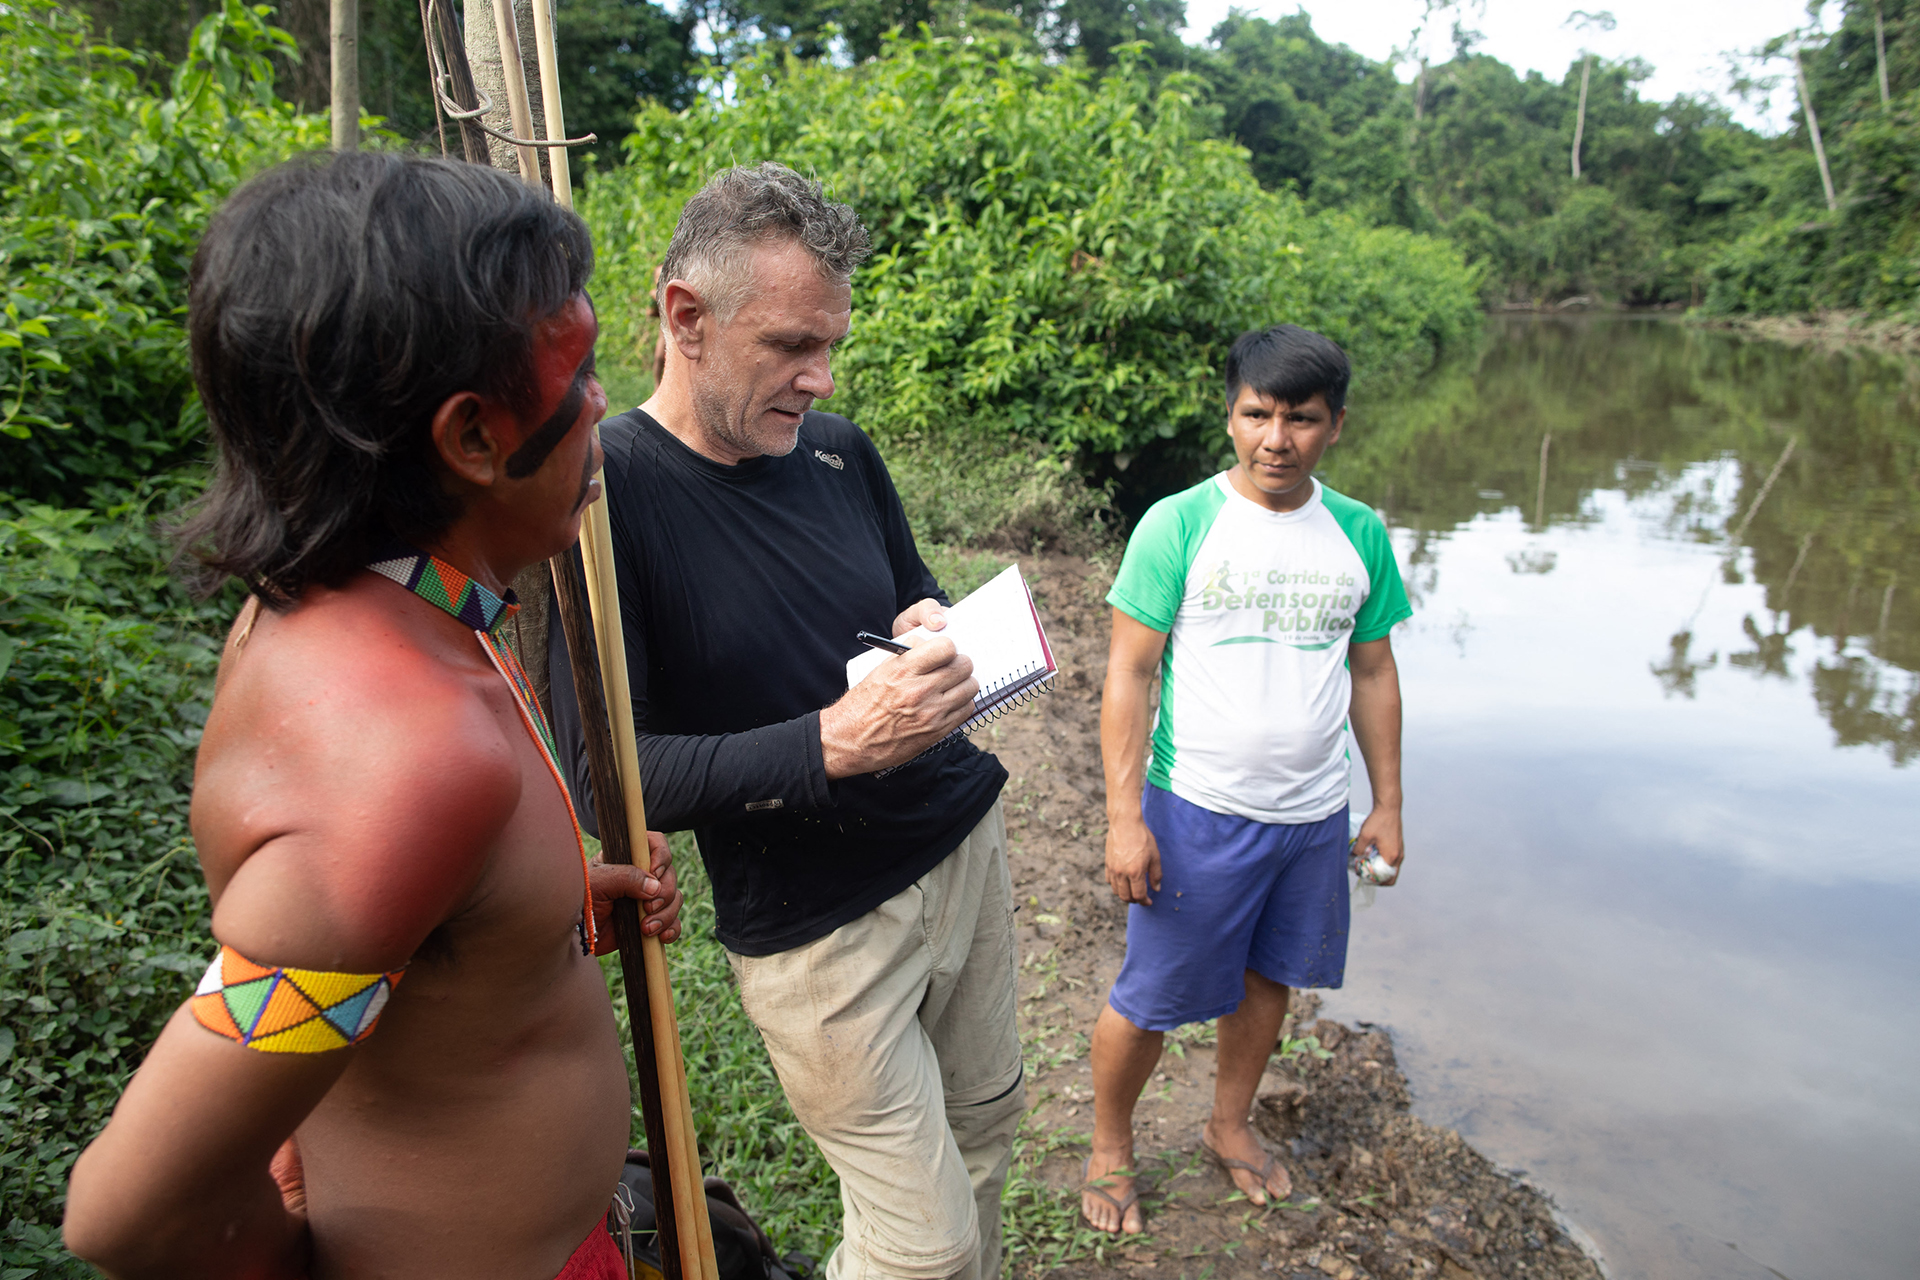 IMAGEN DE ARCHIVO: El veterano corresponsal extranjero Dom Phillips (centro) habla con dos hombres indígenas en Aldeia Maloca Papiú, estado de Roraima, Brasil, el 16 de noviembre de 2019 (AFP)
